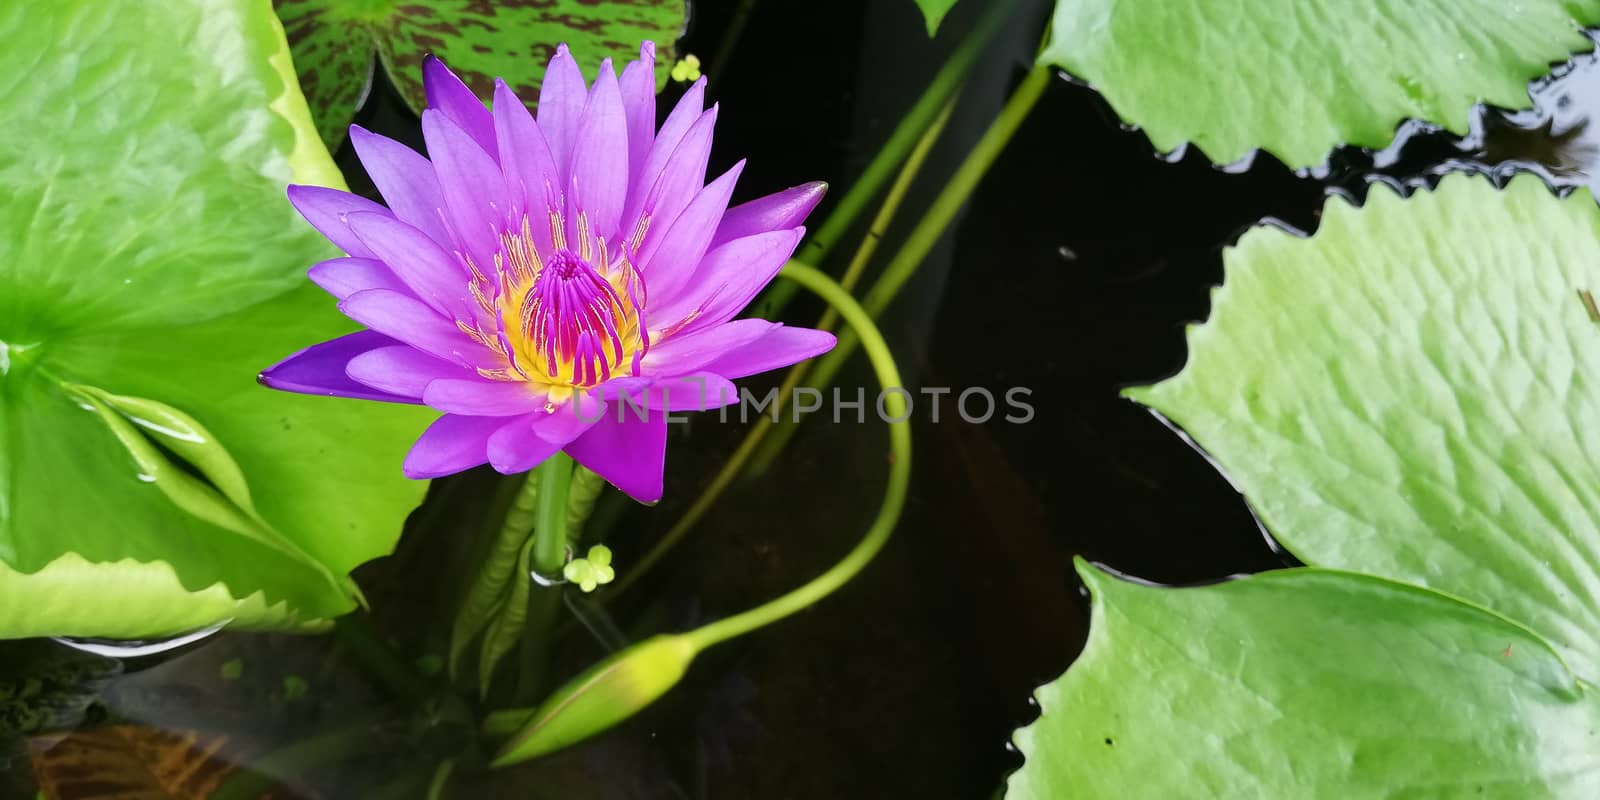 purple lotus in pond by Khankeawsanan